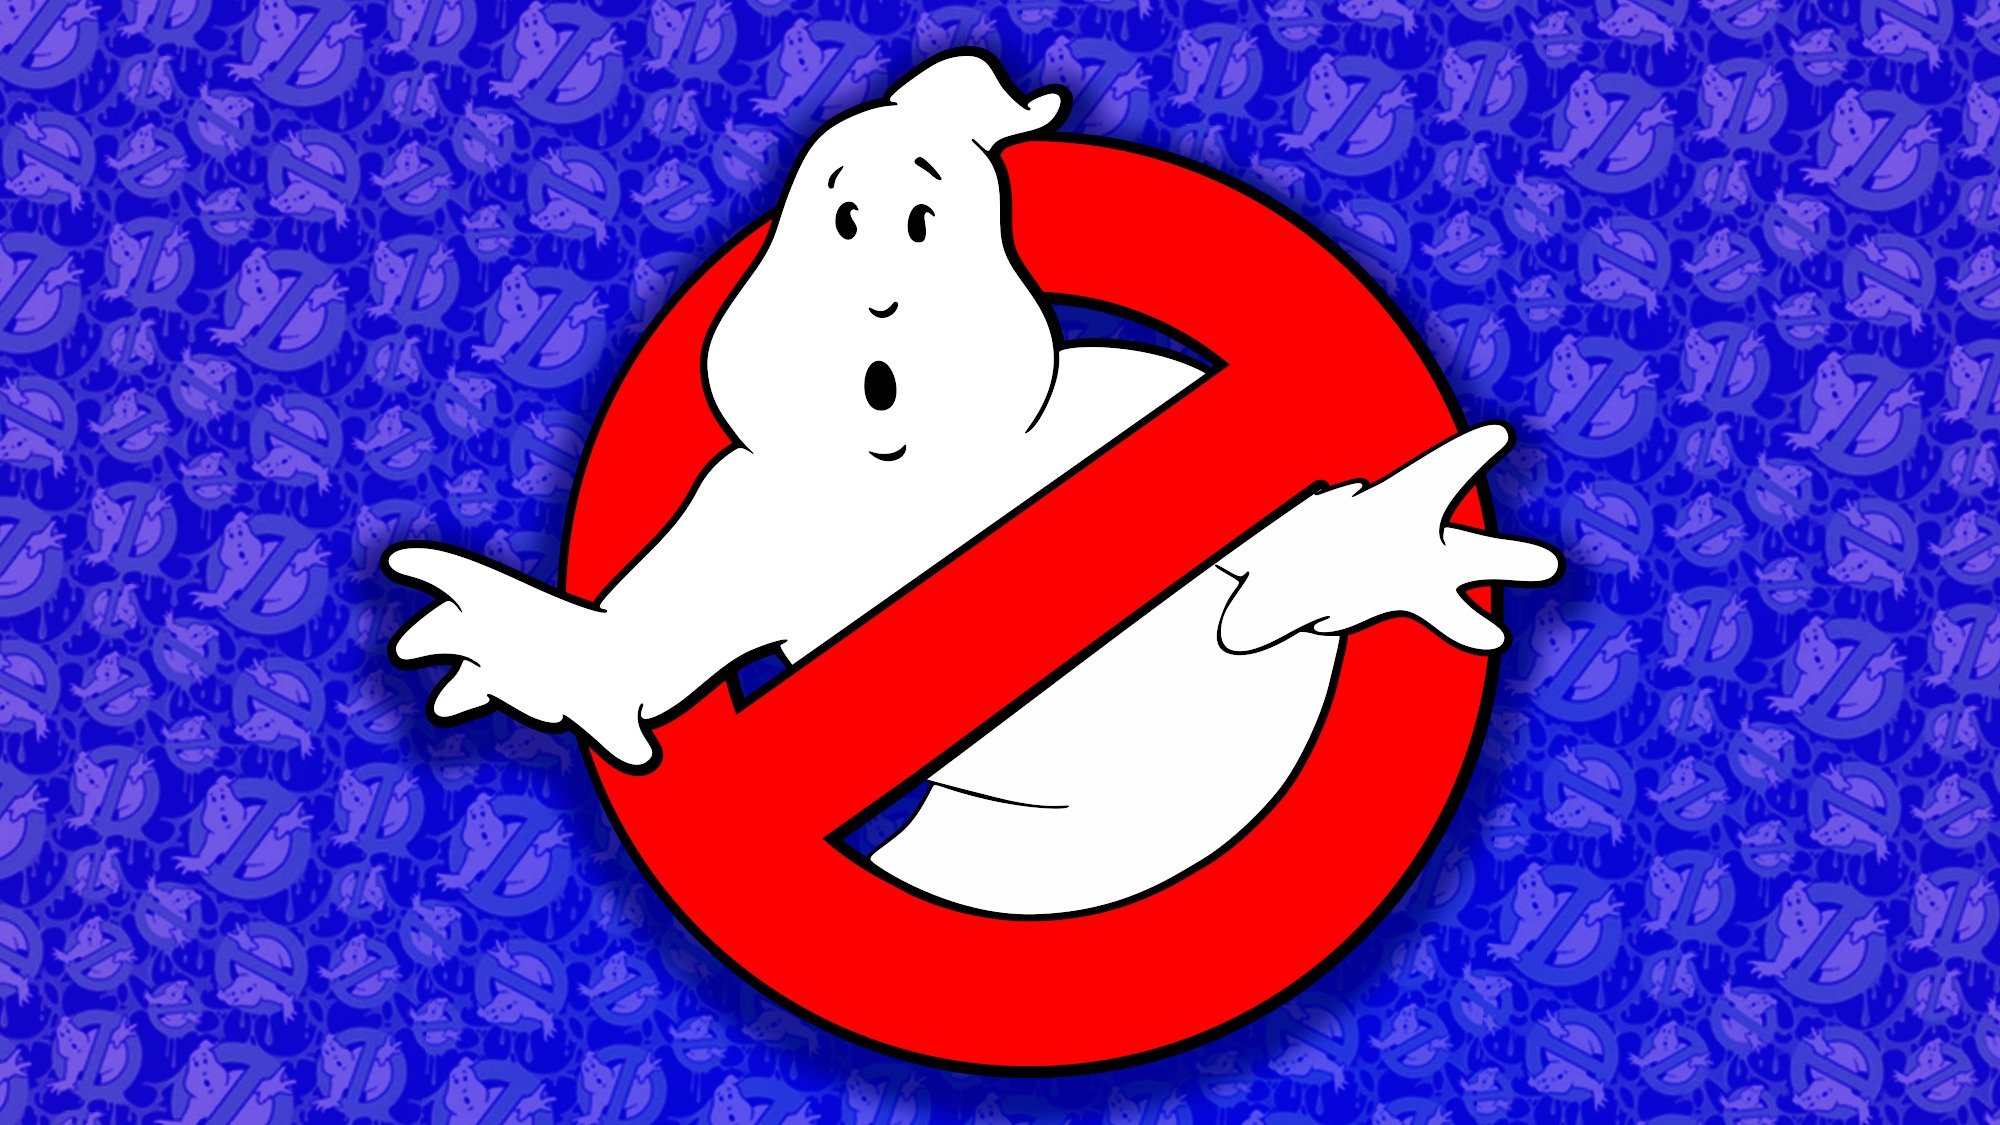 Ghostbusters : un trailer ultra nostalgique qui annonce un retour iconique